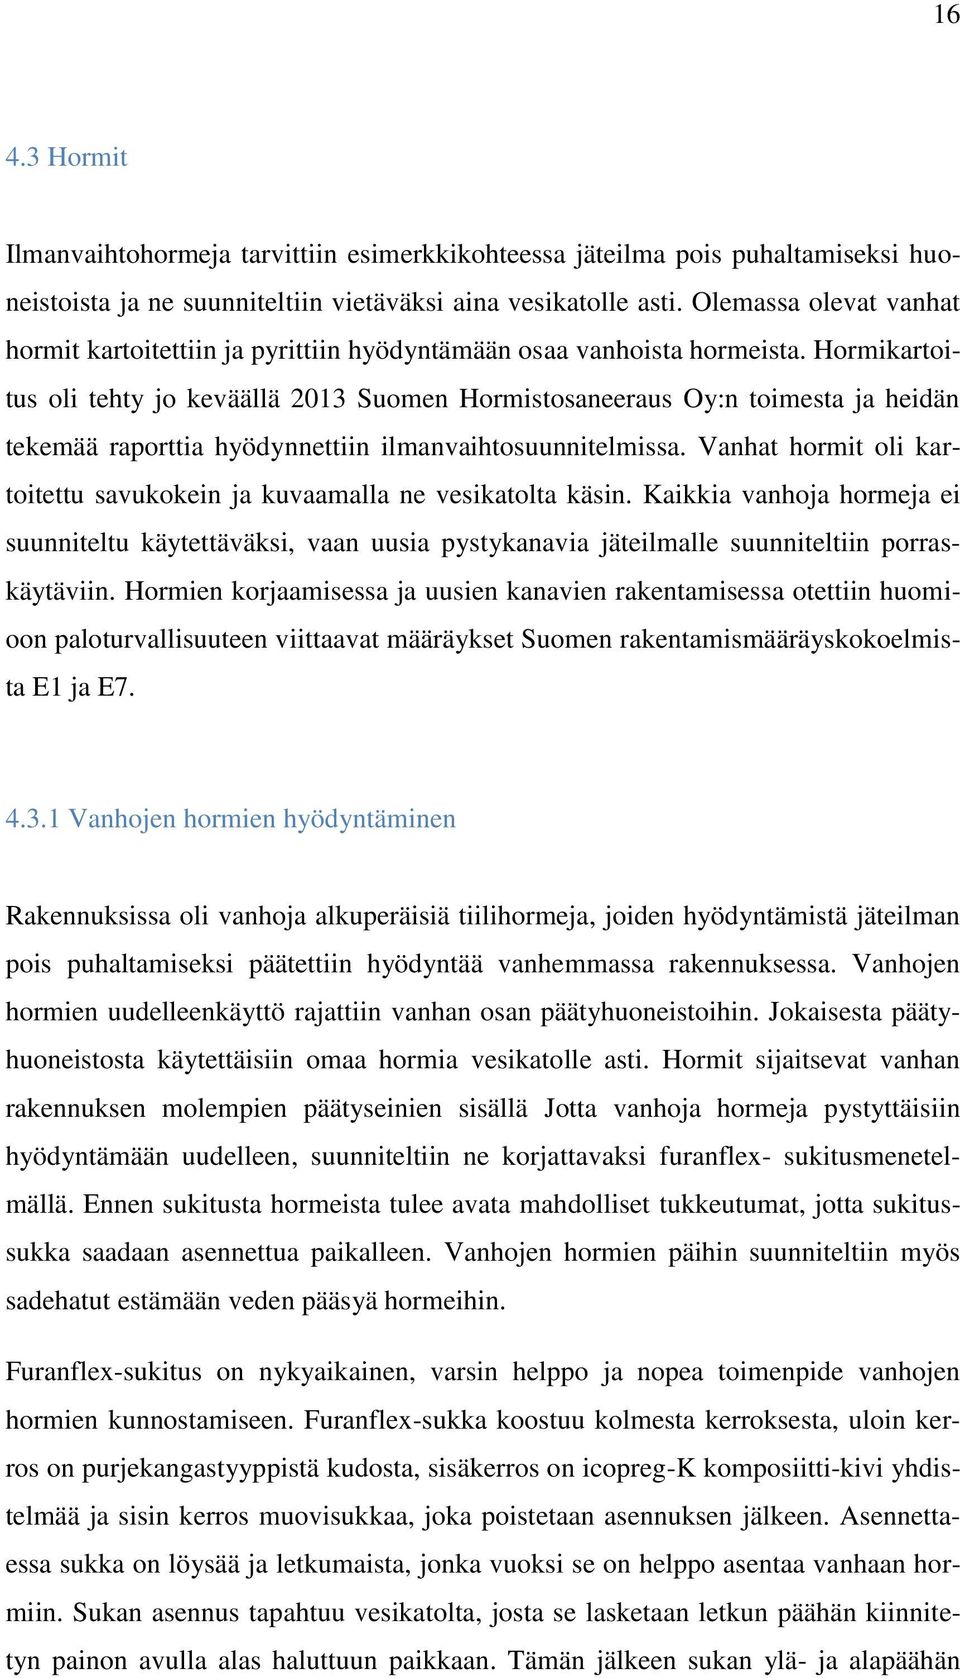 Hormikartoitus oli tehty jo keväällä 2013 Suomen Hormistosaneeraus Oy:n toimesta ja heidän tekemää raporttia hyödynnettiin ilmanvaihtosuunnitelmissa.